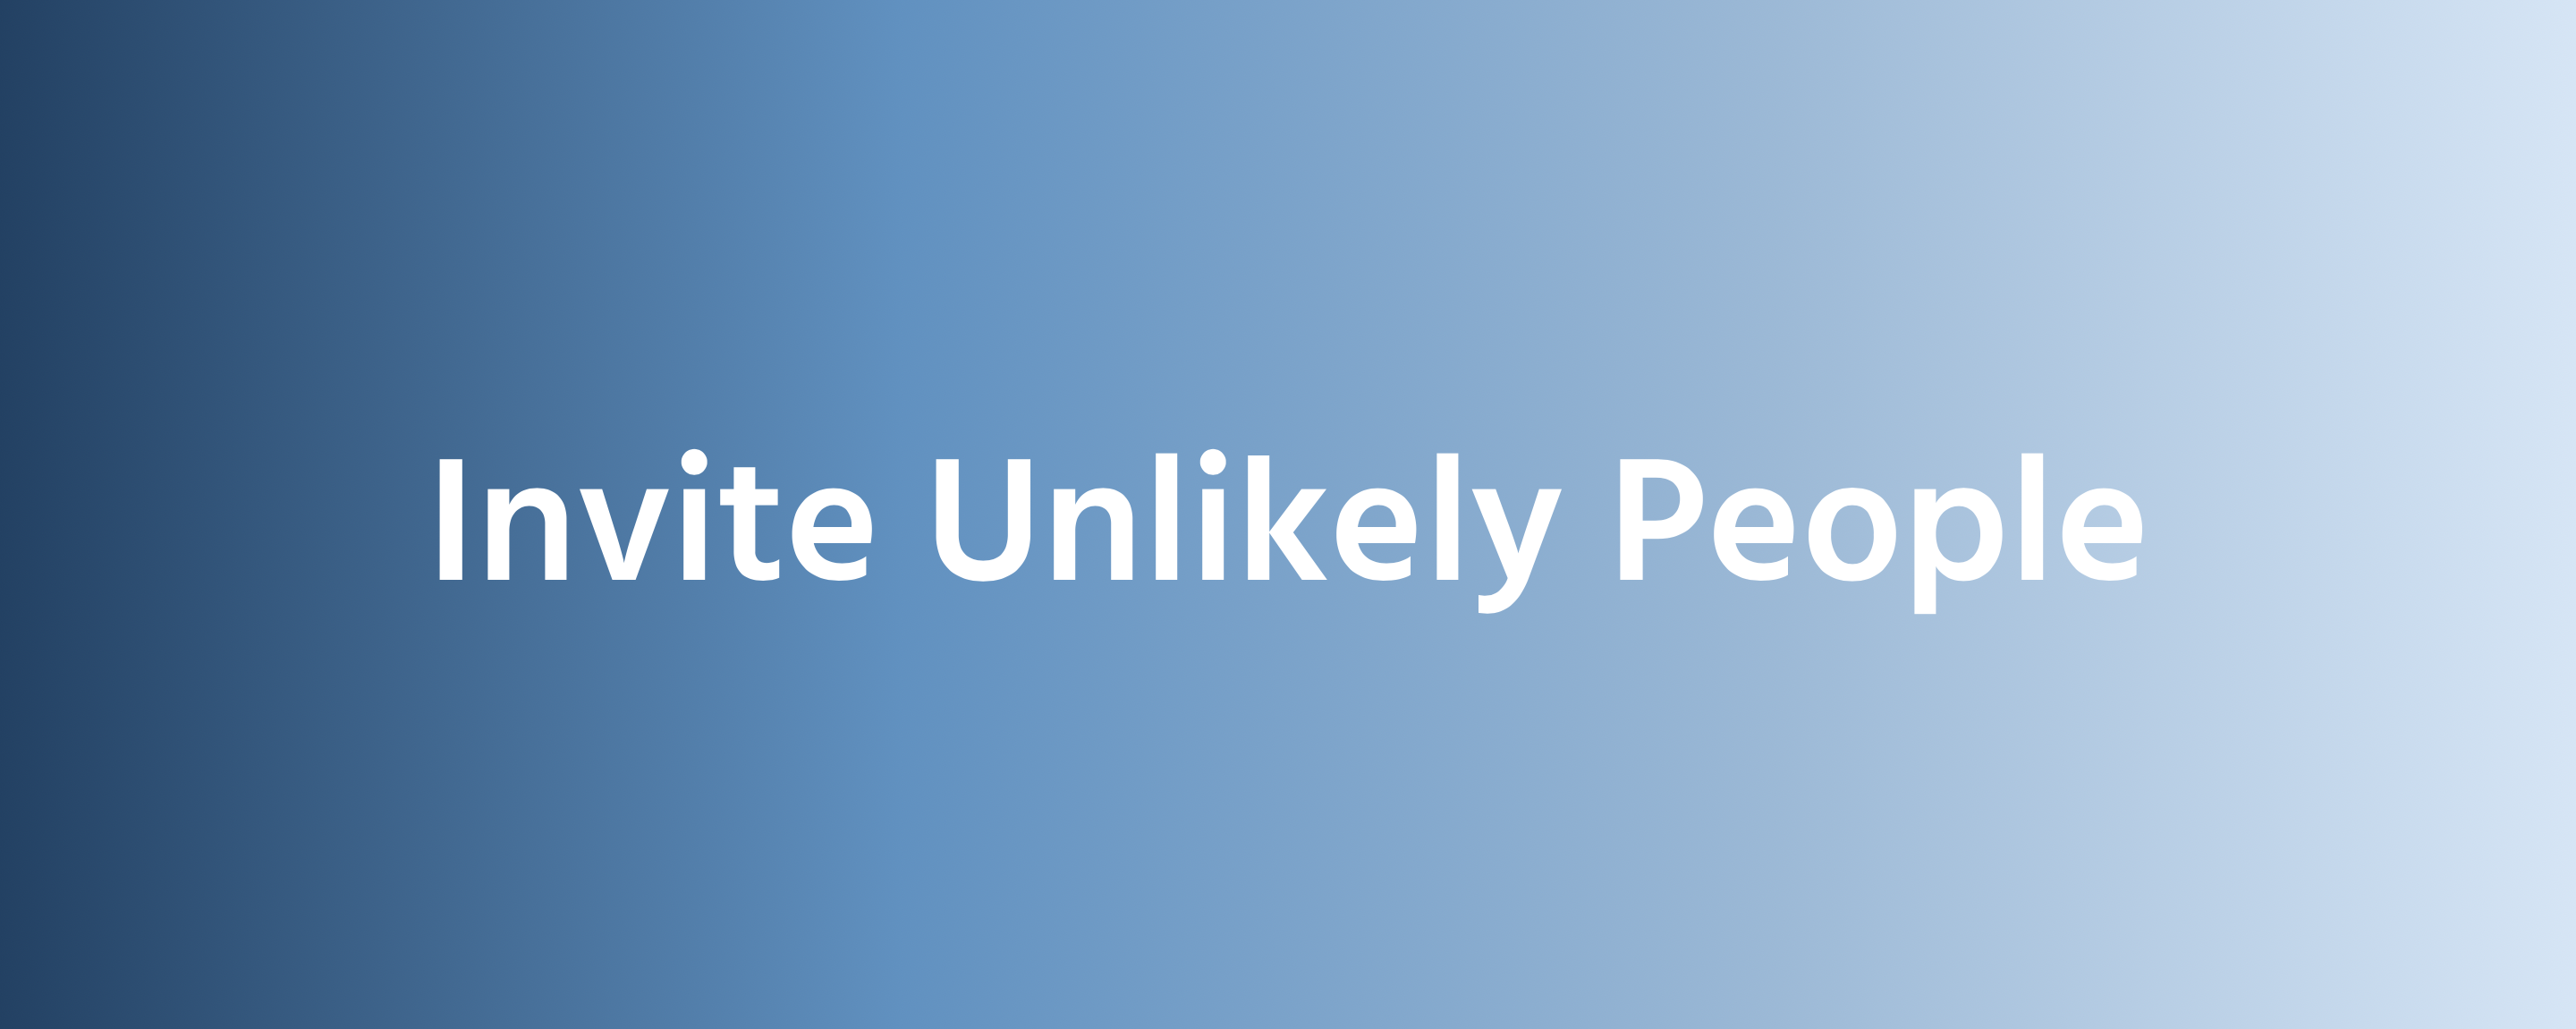 unlikely people